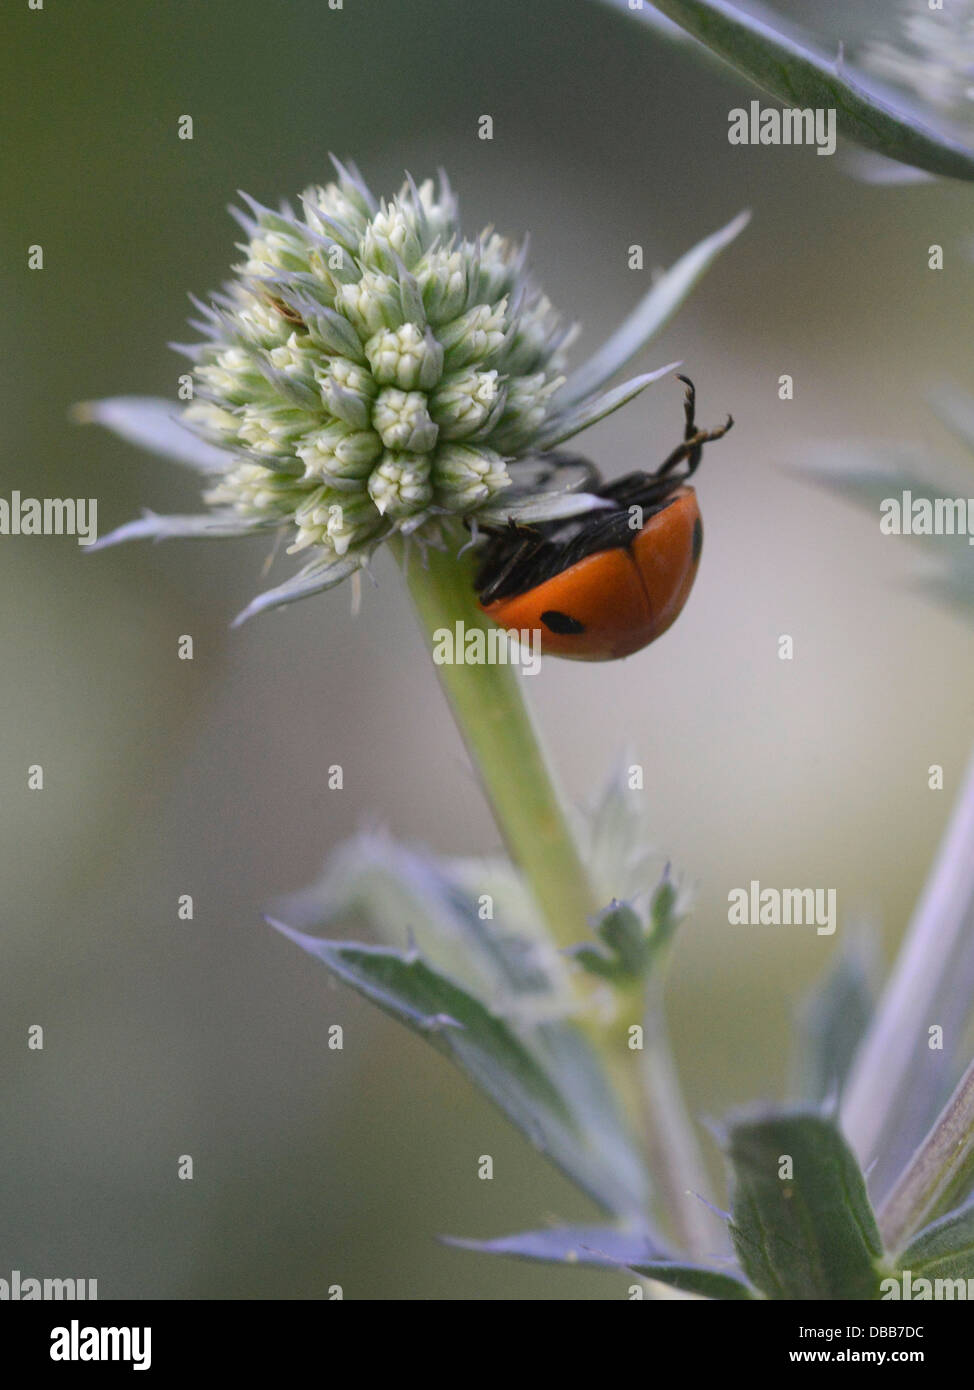 A ladybird balancing on a eryngium flower head. Stock Photo